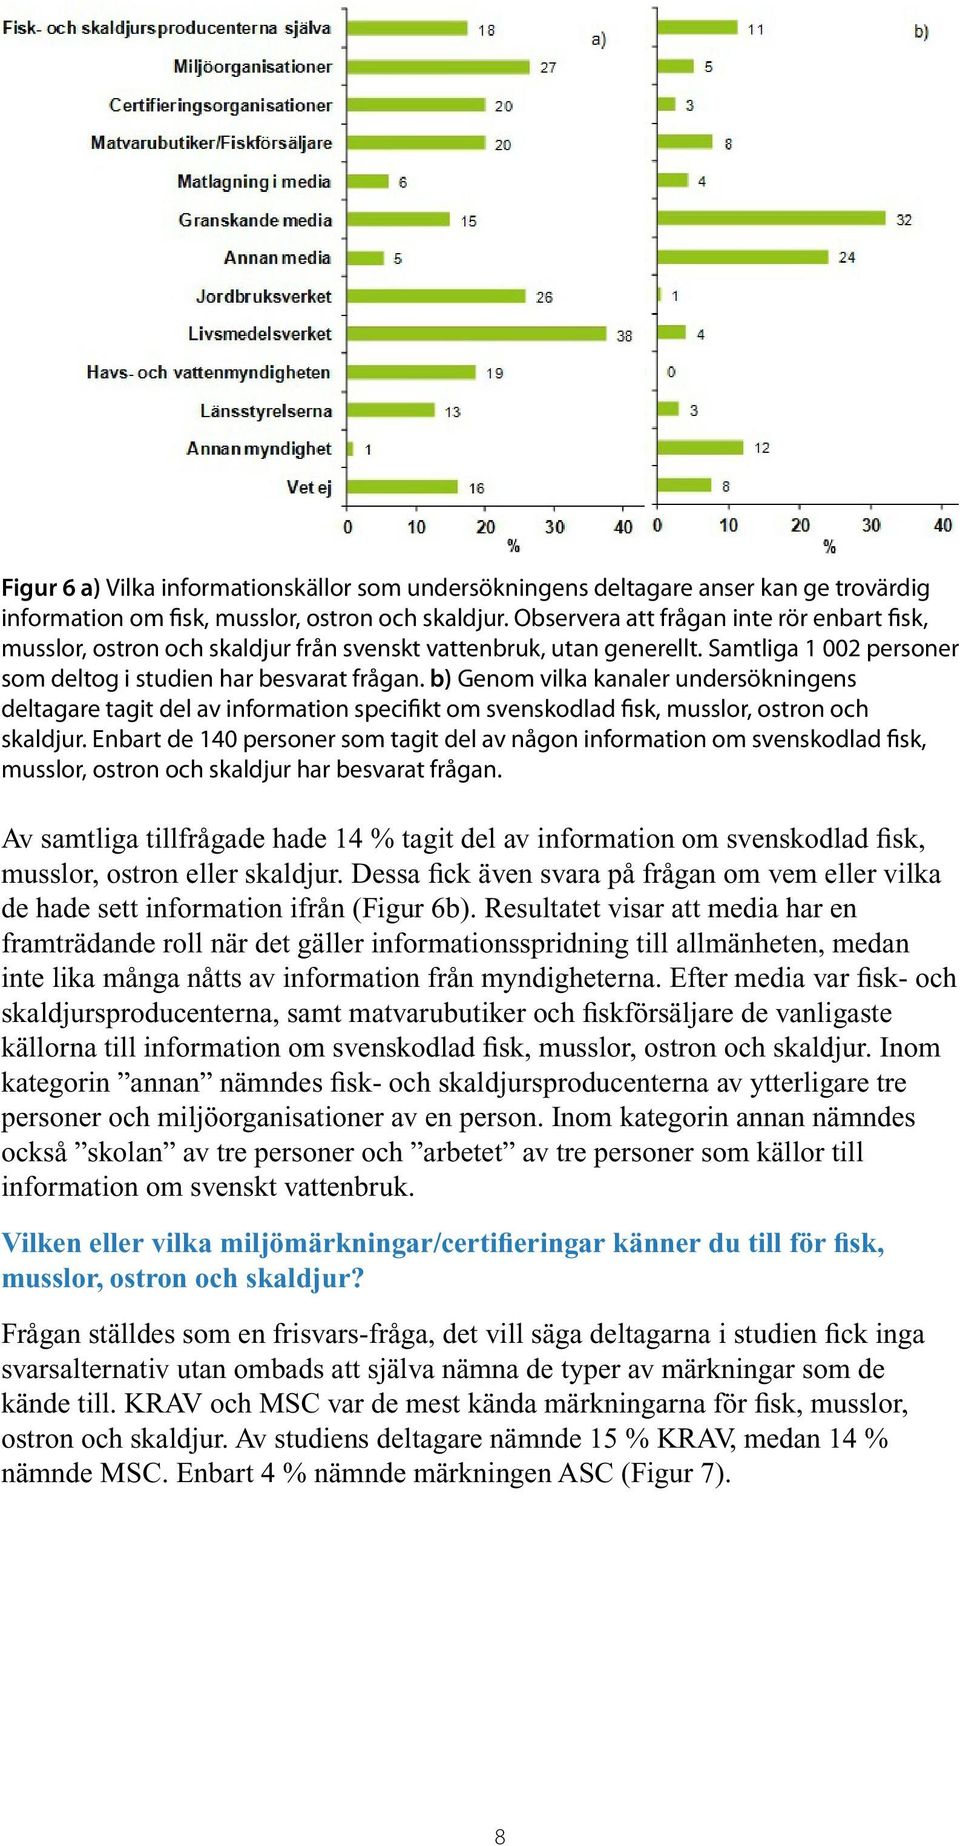 b) Genom vilka kanaler undersökningens deltagare tagit del av information specifikt om svenskodlad fisk, musslor, ostron och skaldjur.